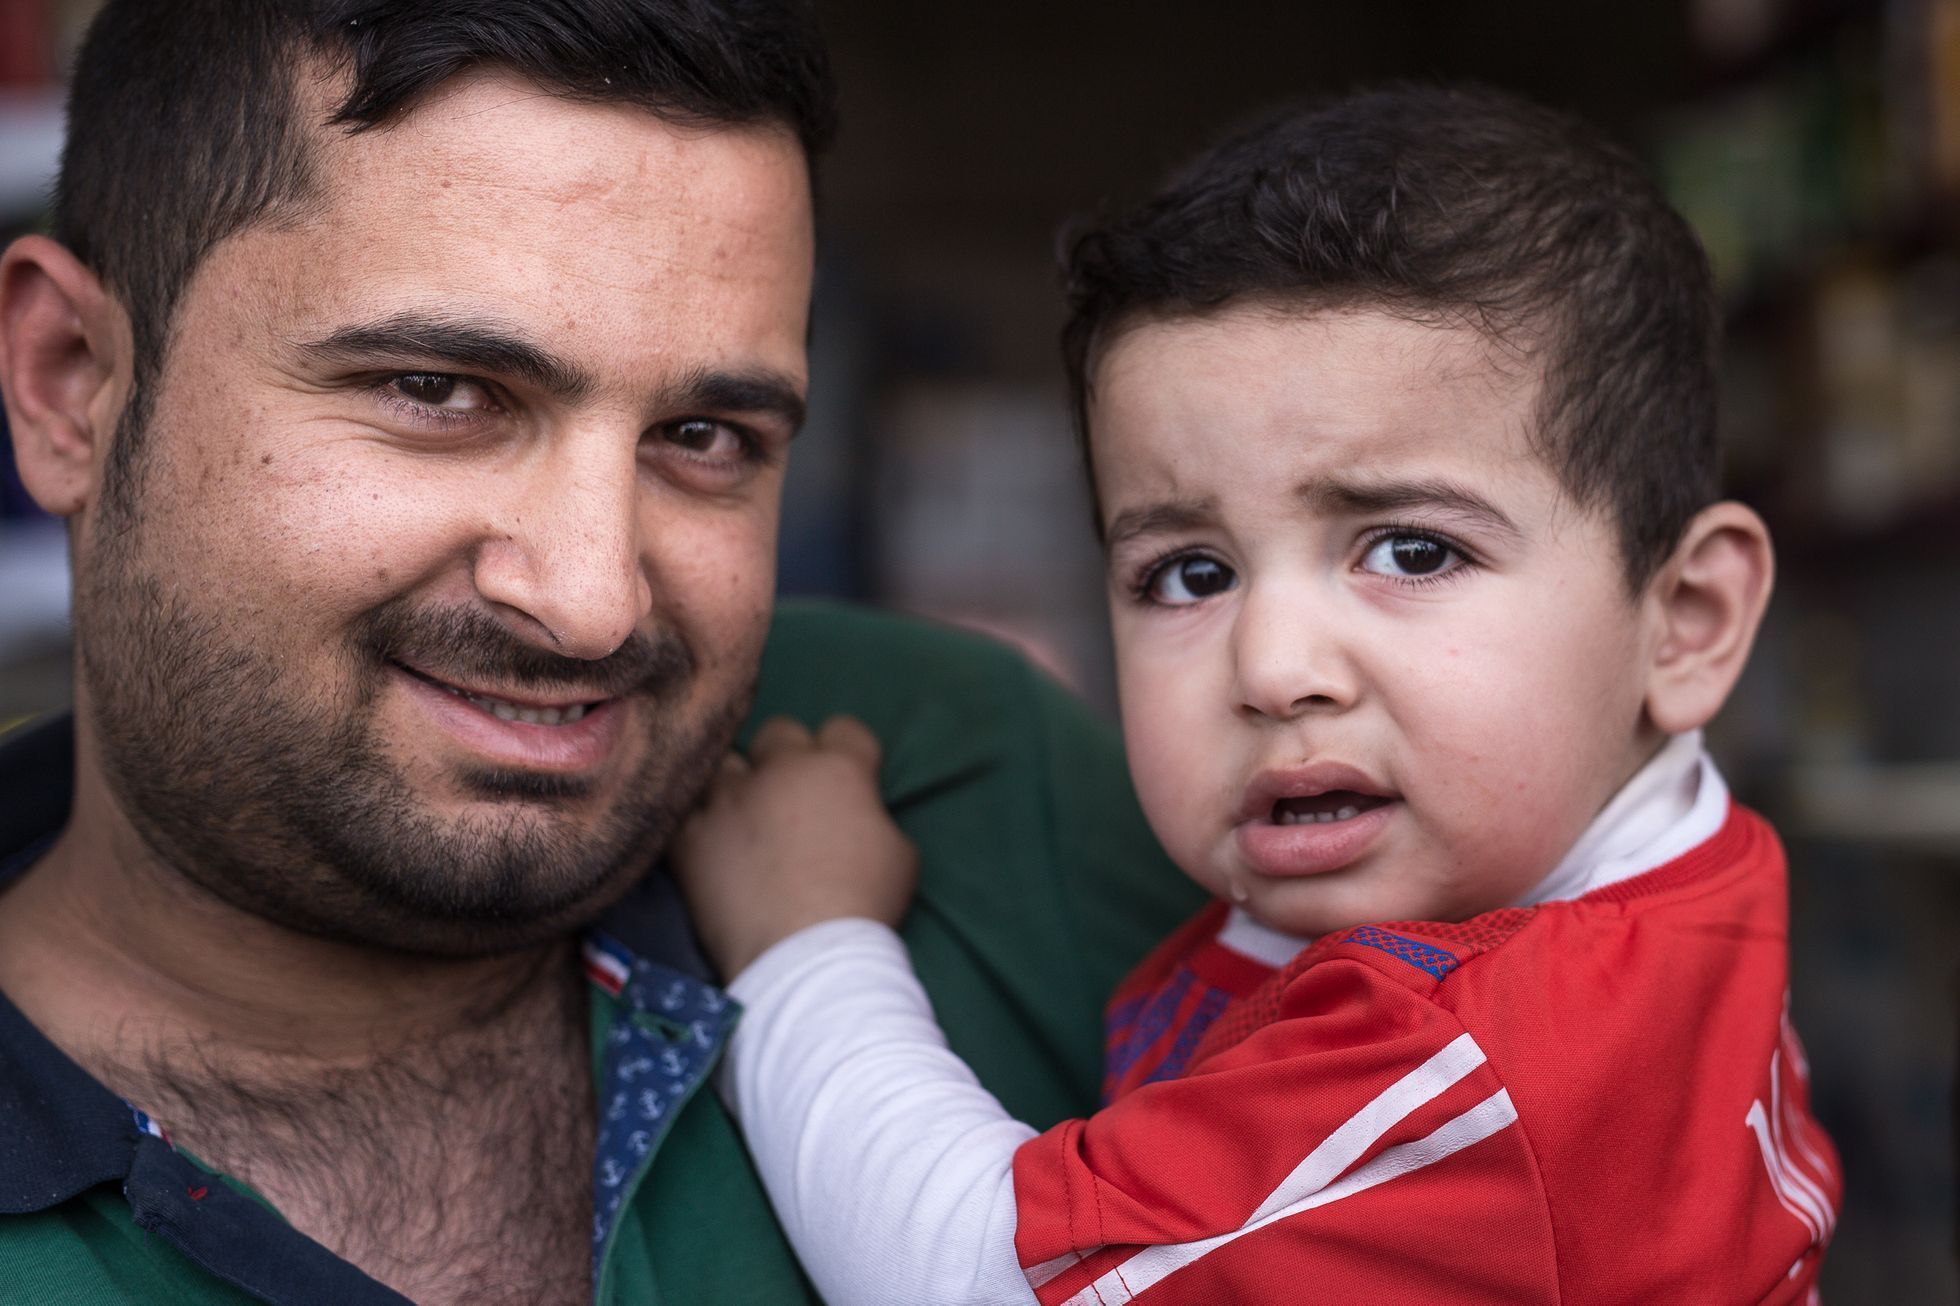 Mosul, Irák - rodný list dítěte narozeného v Islámském státu